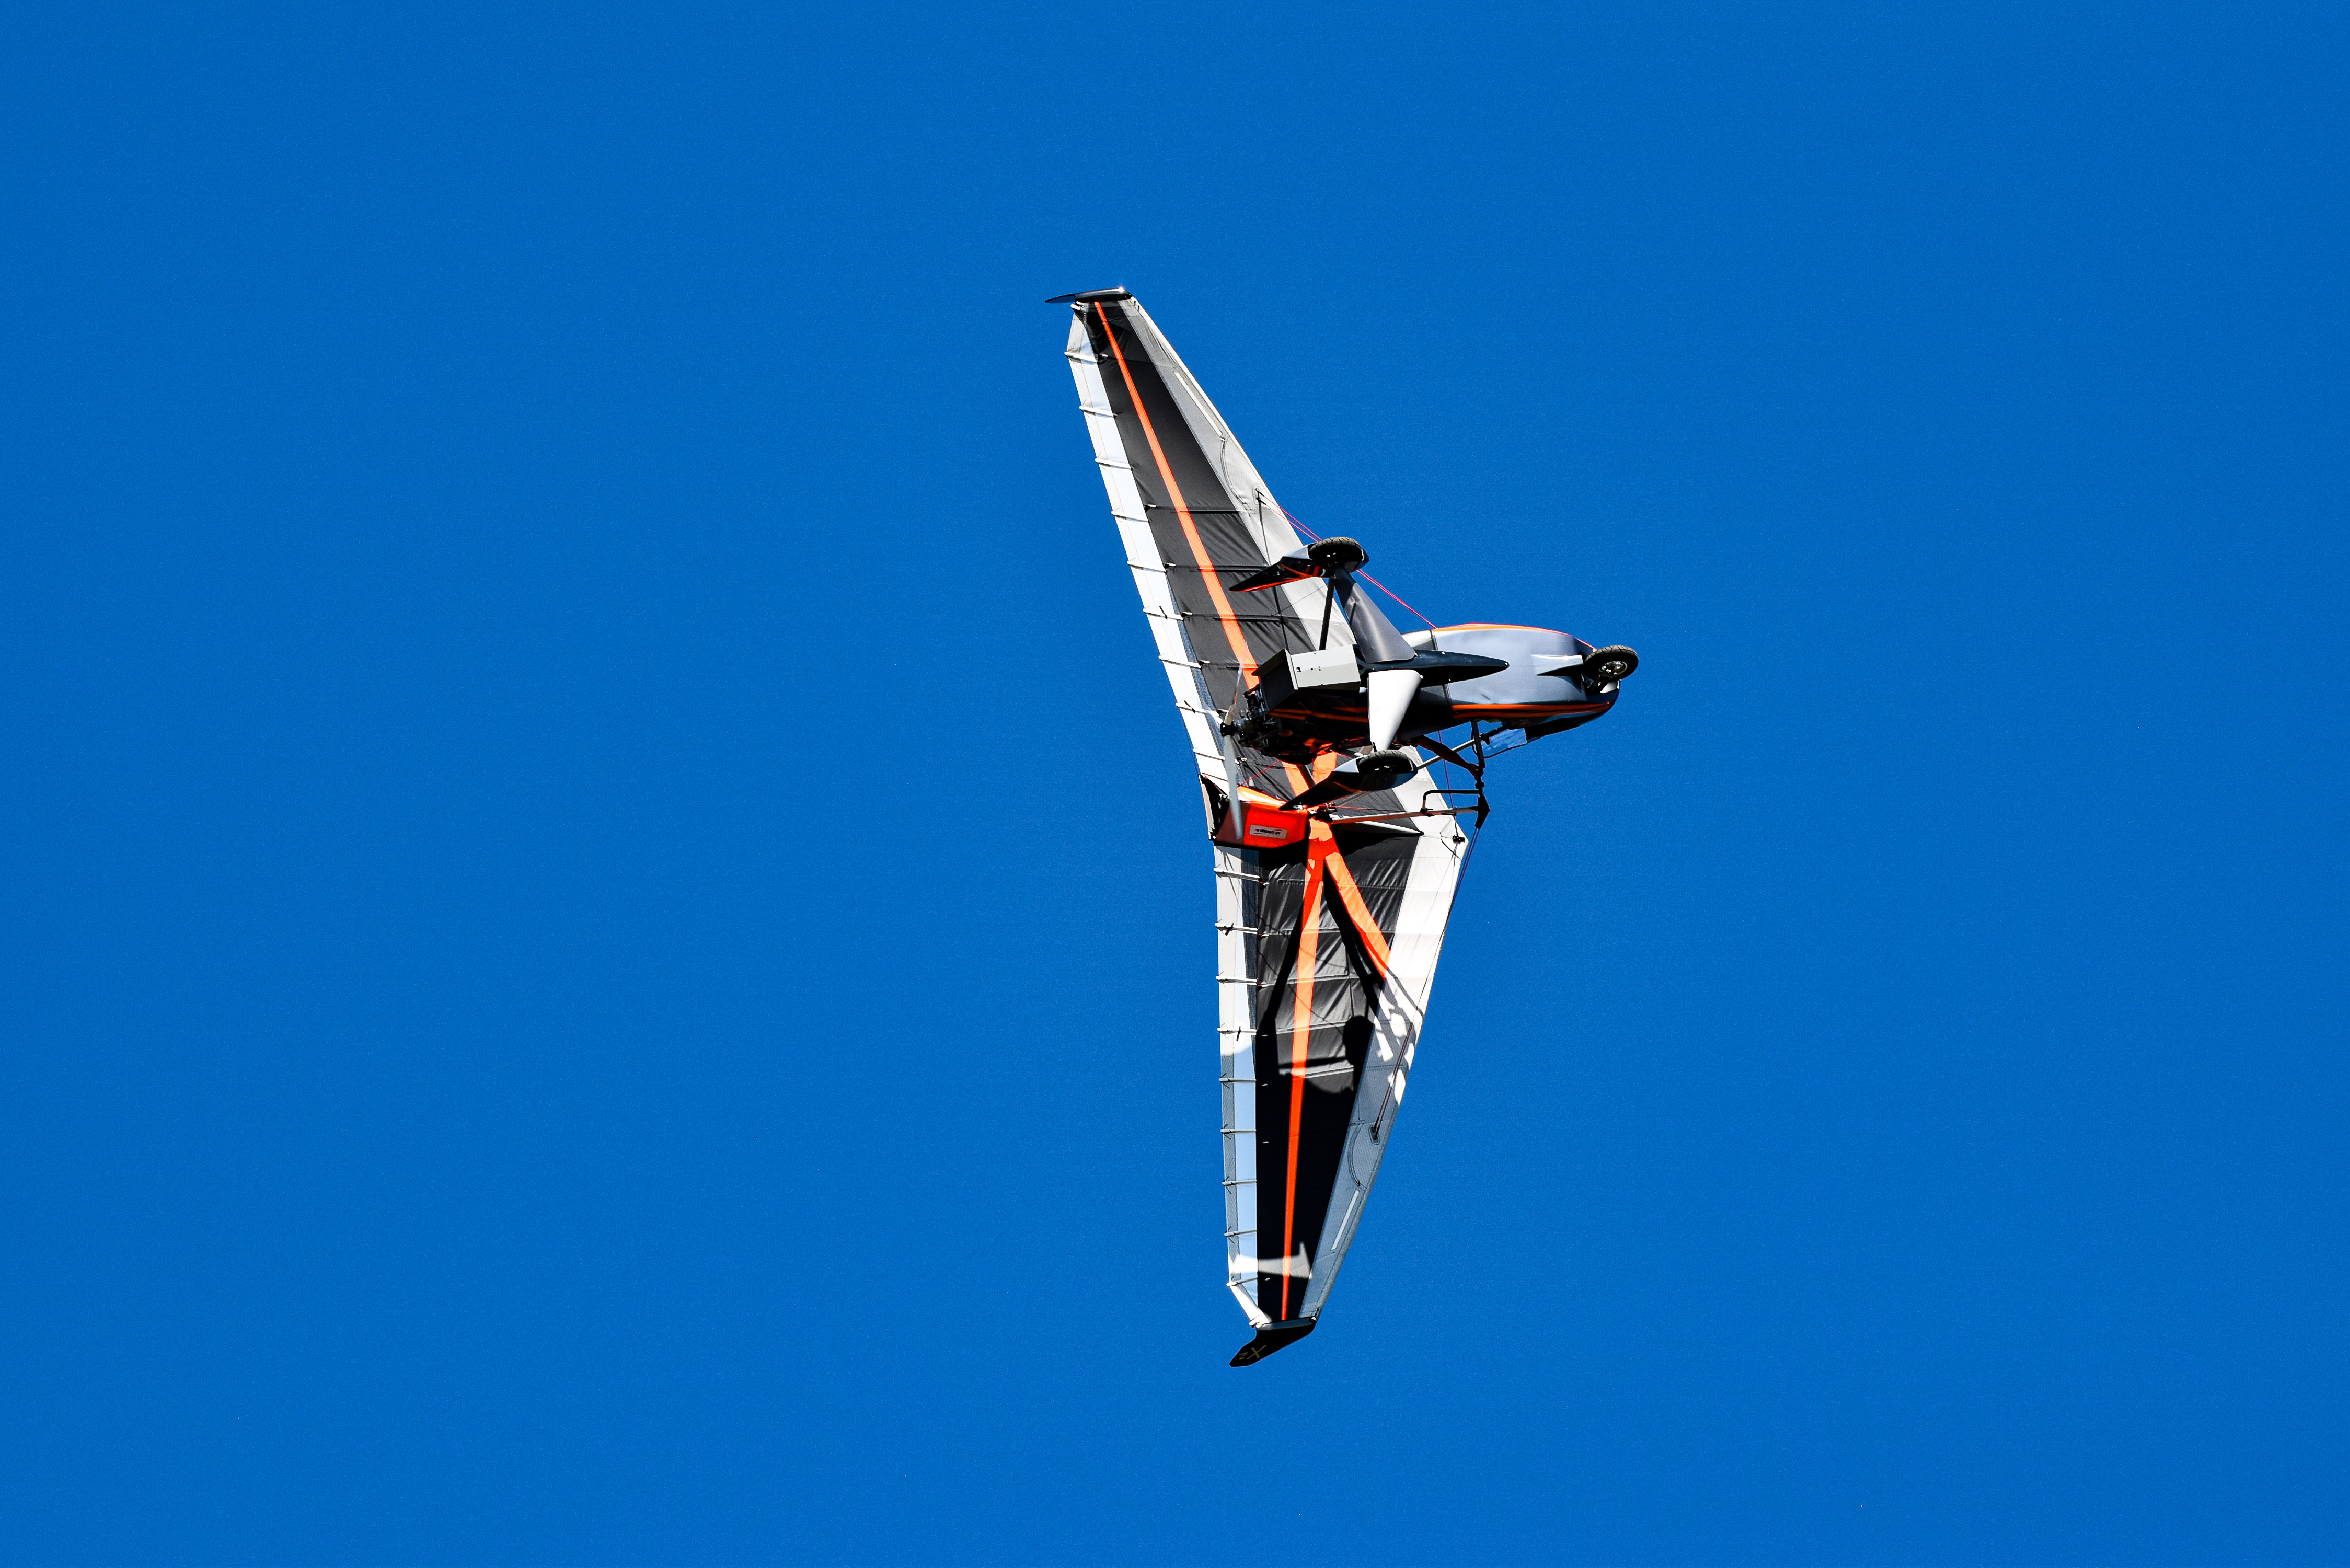 fly/en-vol-bionix2-tanarg-neo-en-vol-in-fly-ulm-pendulaire-ultralight-trike-wings-34.jpg